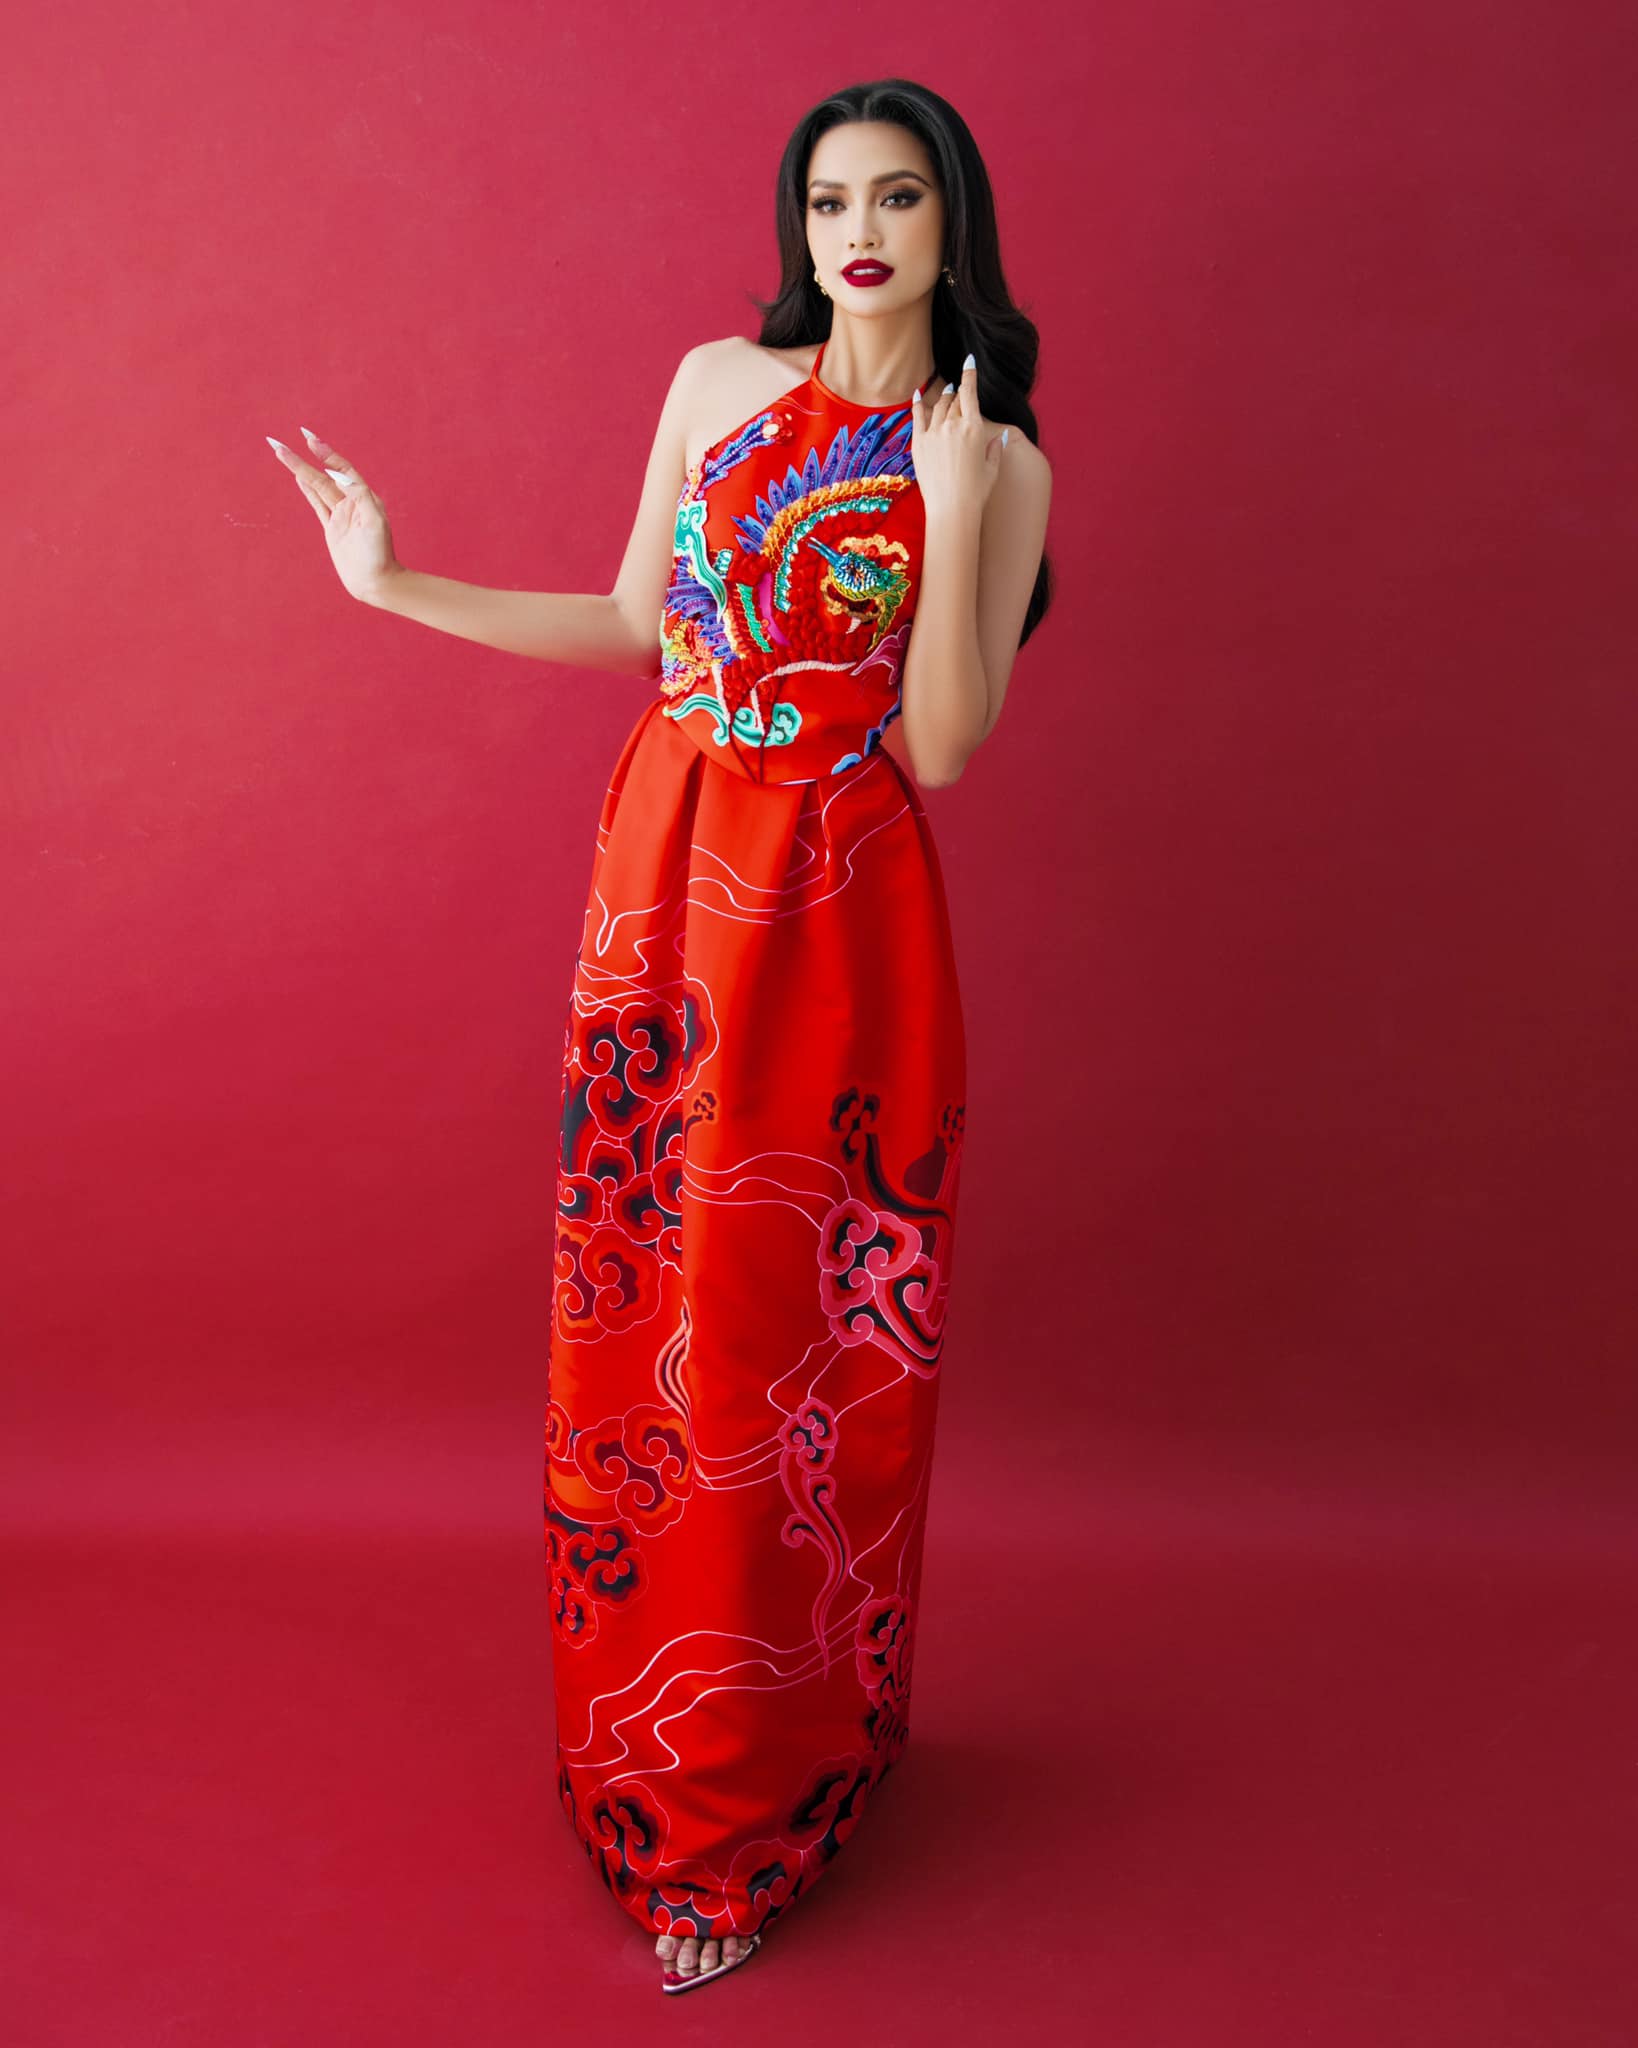 Hậu tin đồn out top 16, Ngọc Châu khiến fan lấy lại niềm tin với nhan sắc cực đỉnh trong trang phục Á Đông - ảnh 6